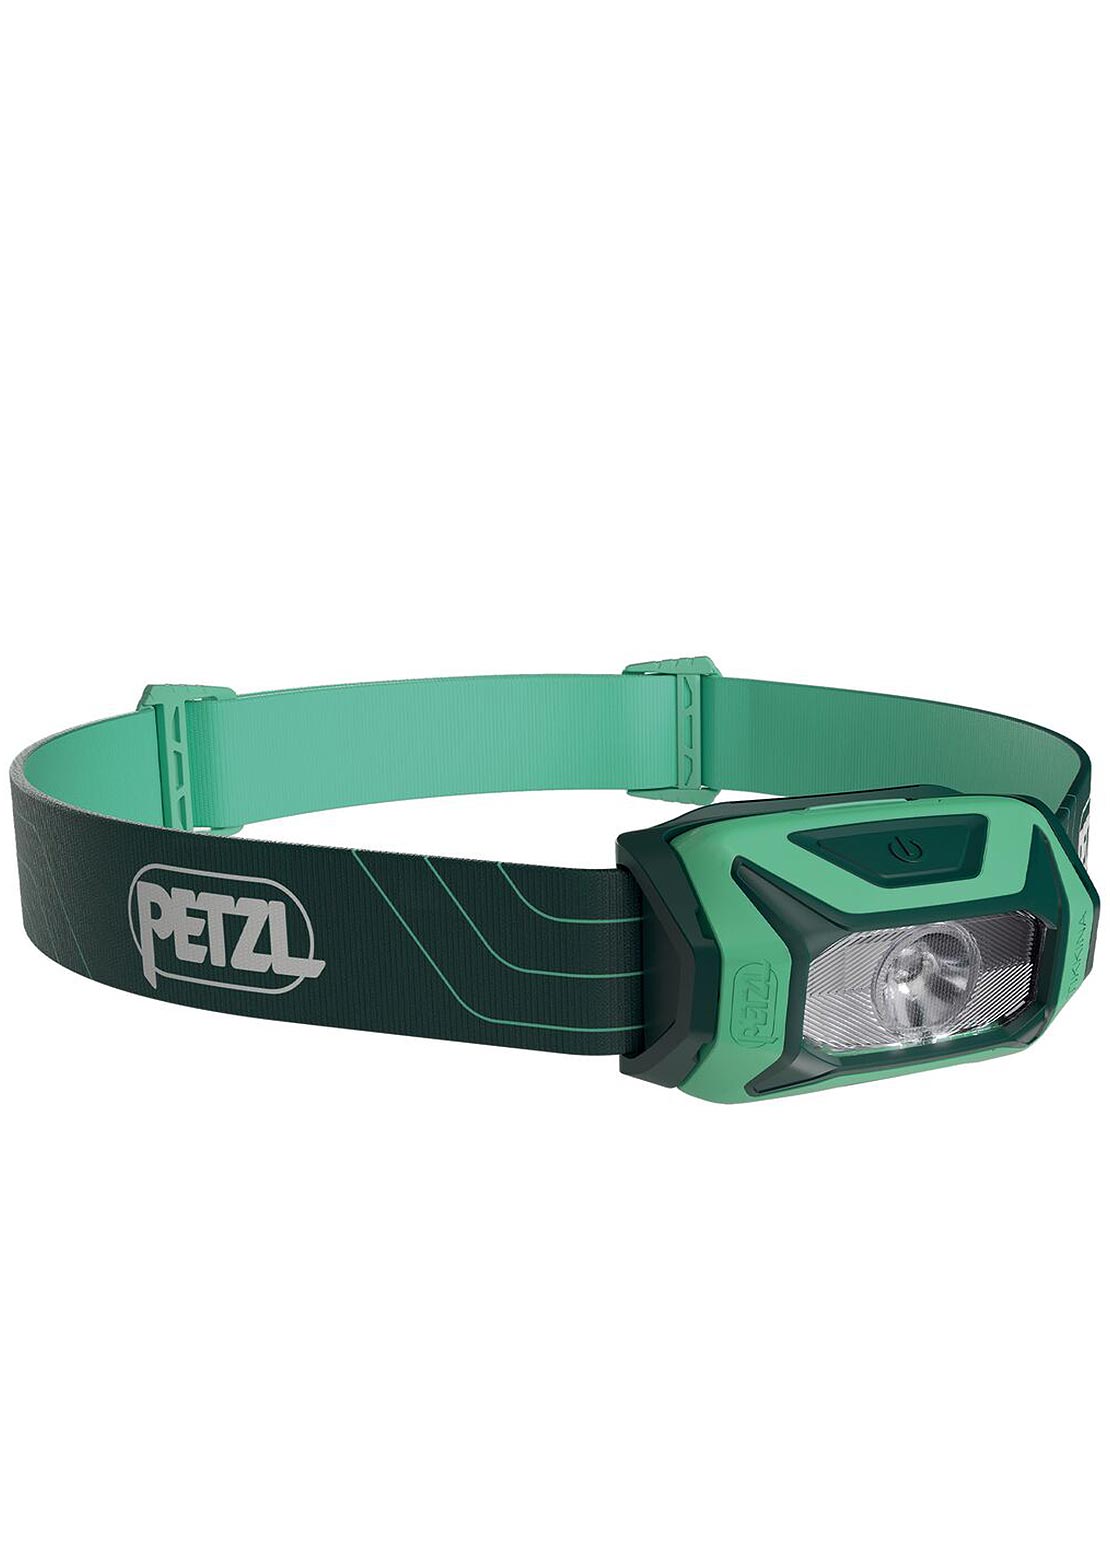 Petzl Tikkina 300 Lumens Headlamp Green